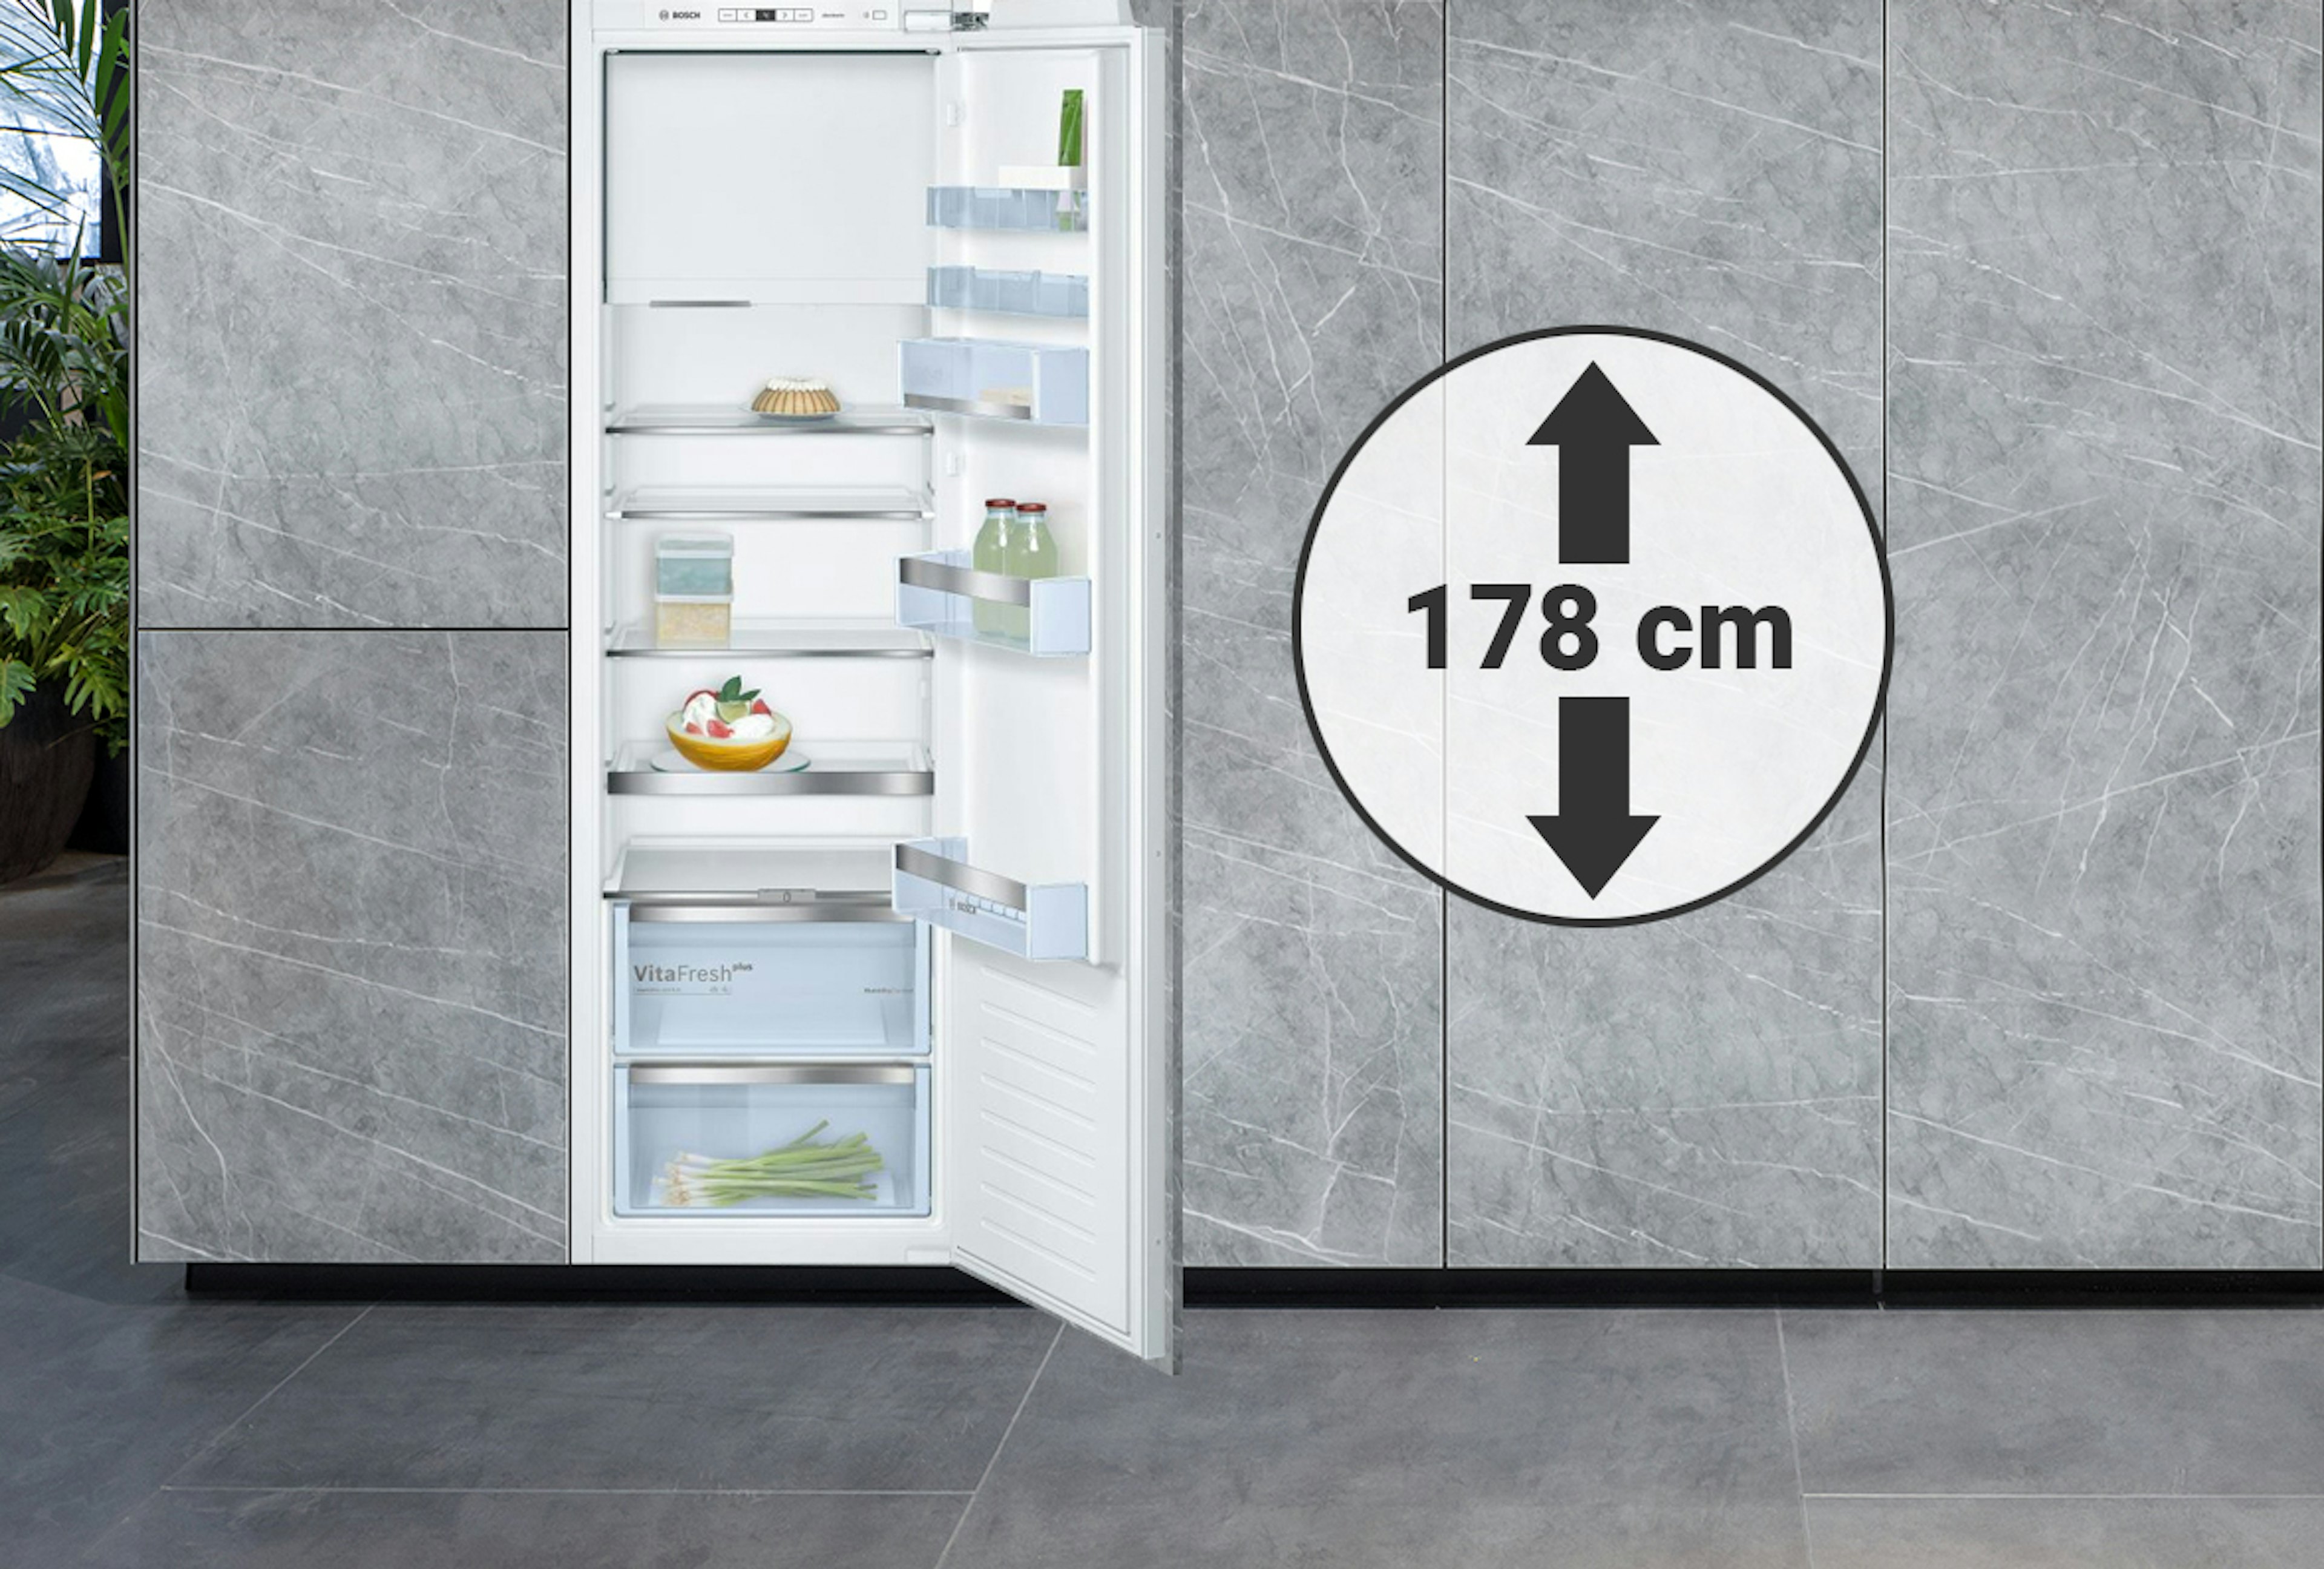 Inbouw koelkasten geschikt voor een nis van rond de 178 cm hoog